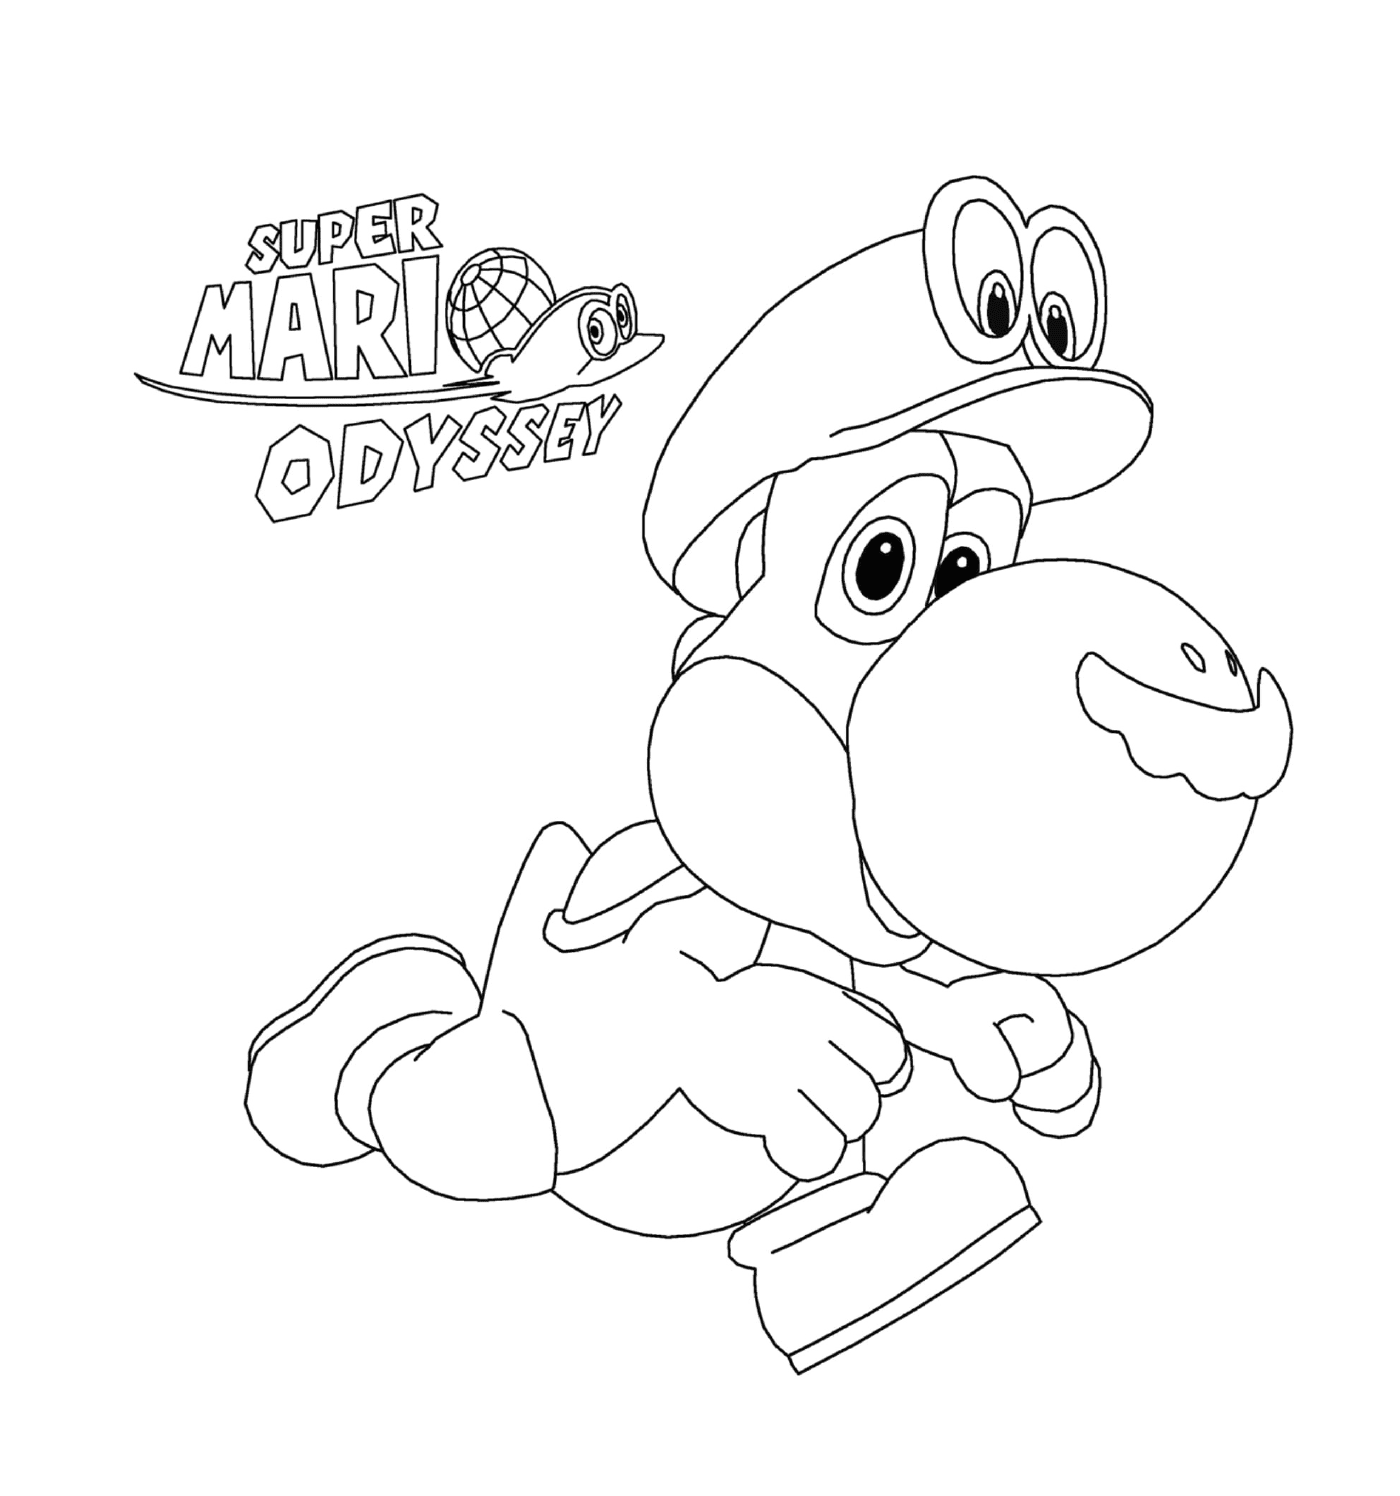 Super Mario Odyssey Yoshi Nintendo